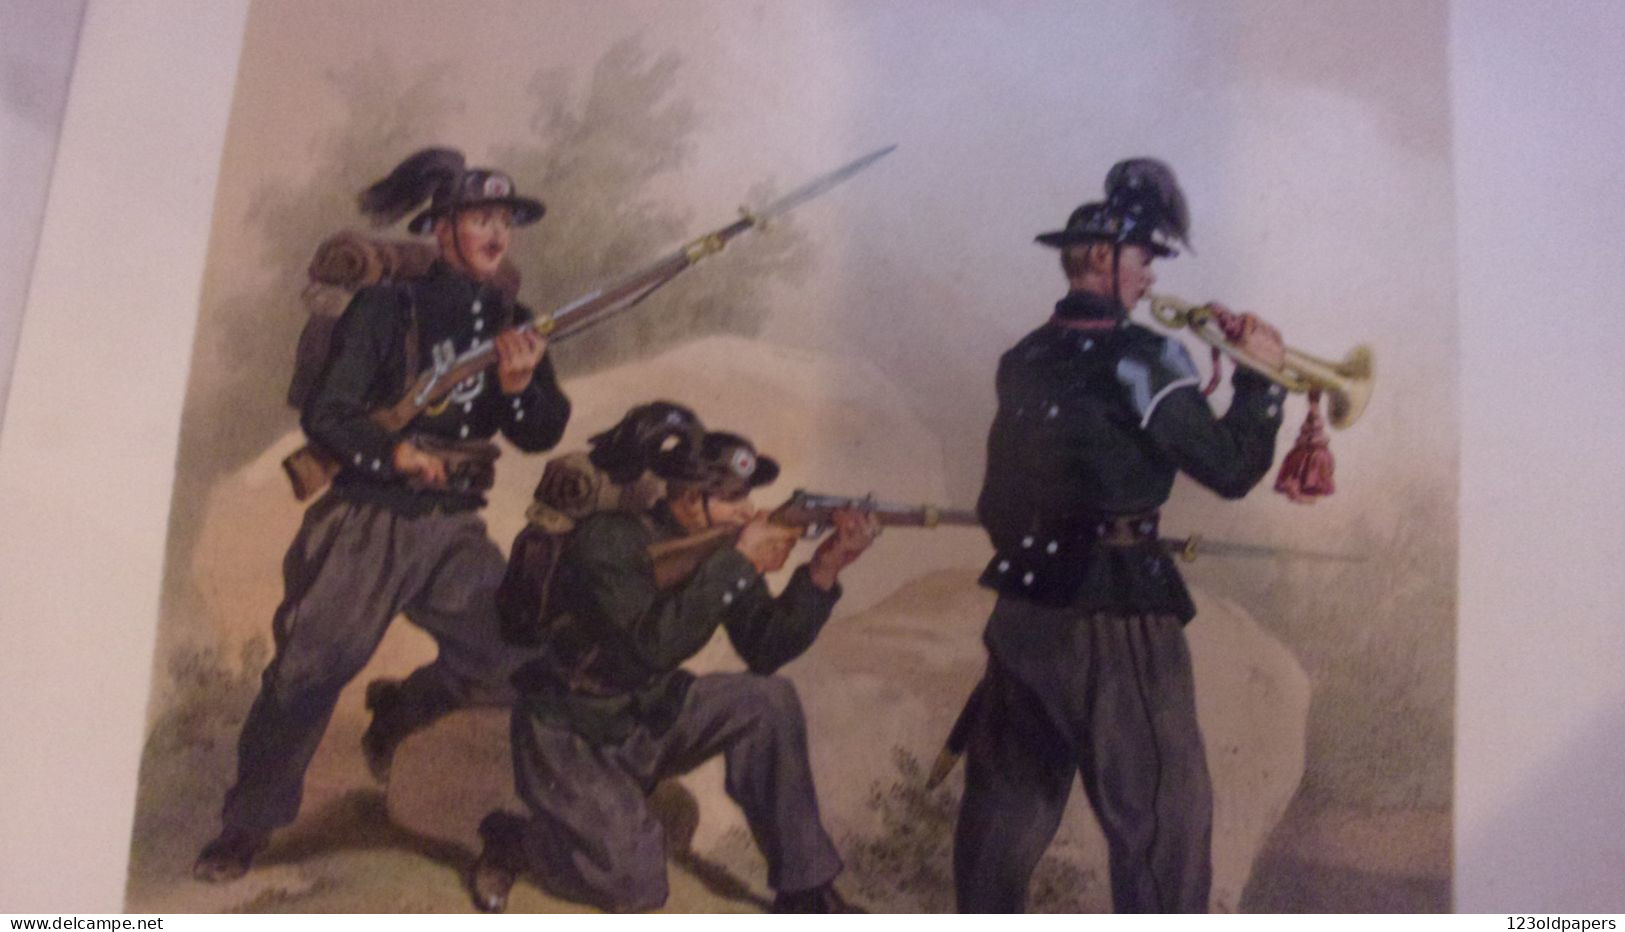 1861 Fritz von Dardel Uniformes Svenska och Norska Arméerna samt flottorna i deras nuvarande uniformering  6 GRAVURES CO